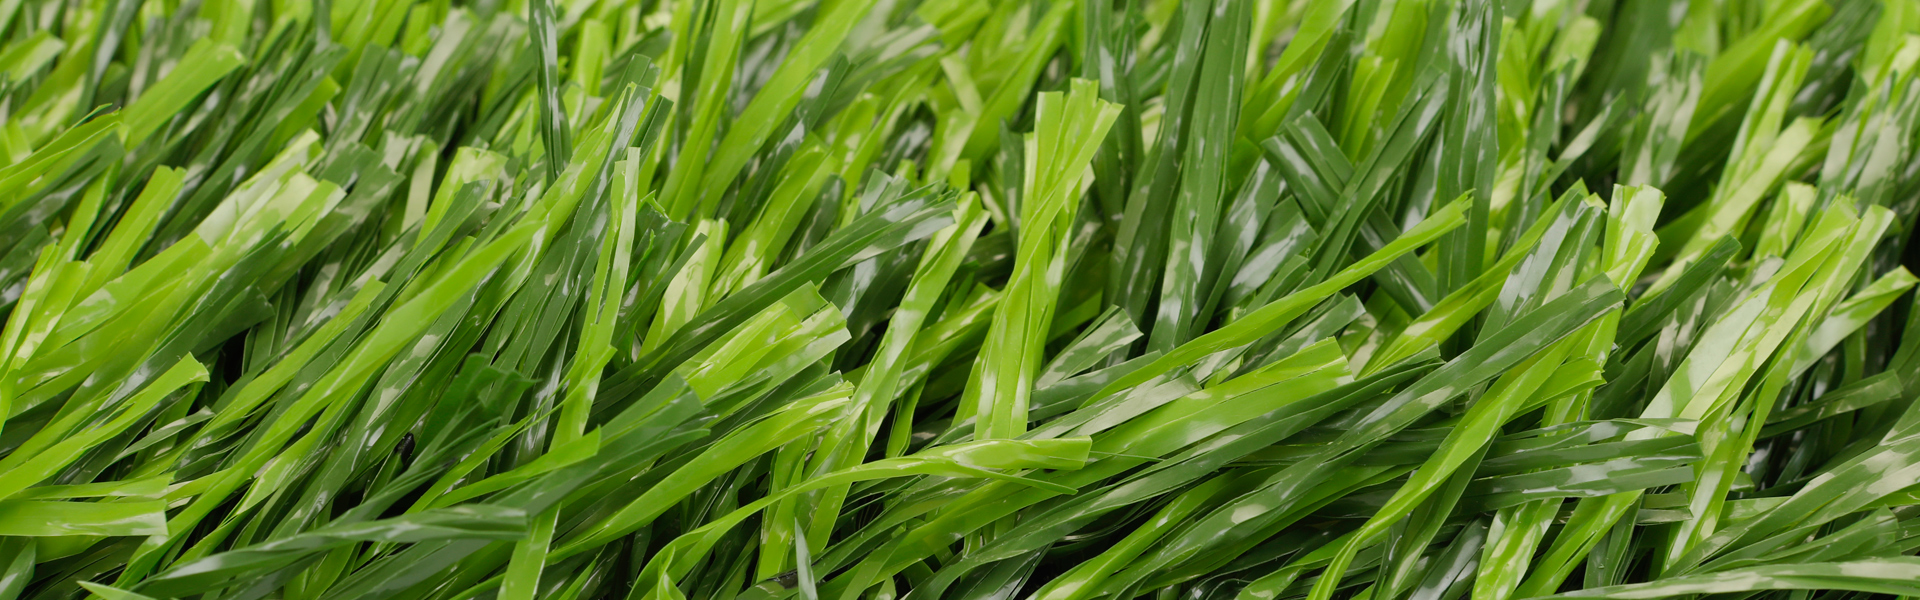 تكلفة إنتاج عشب دوجراس الصناعي Duograss